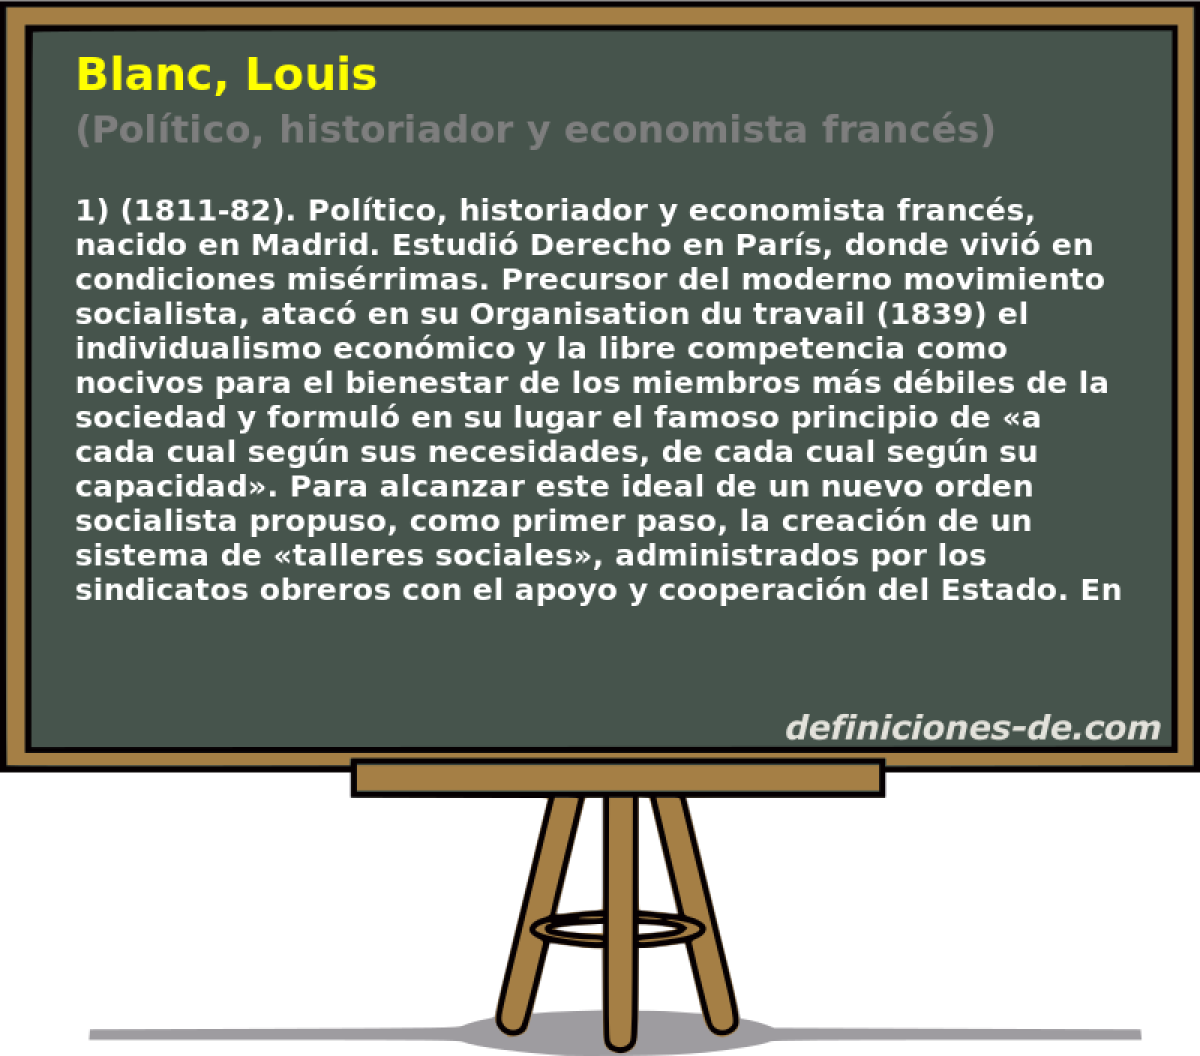 Blanc, Louis (Poltico, historiador y economista francs)